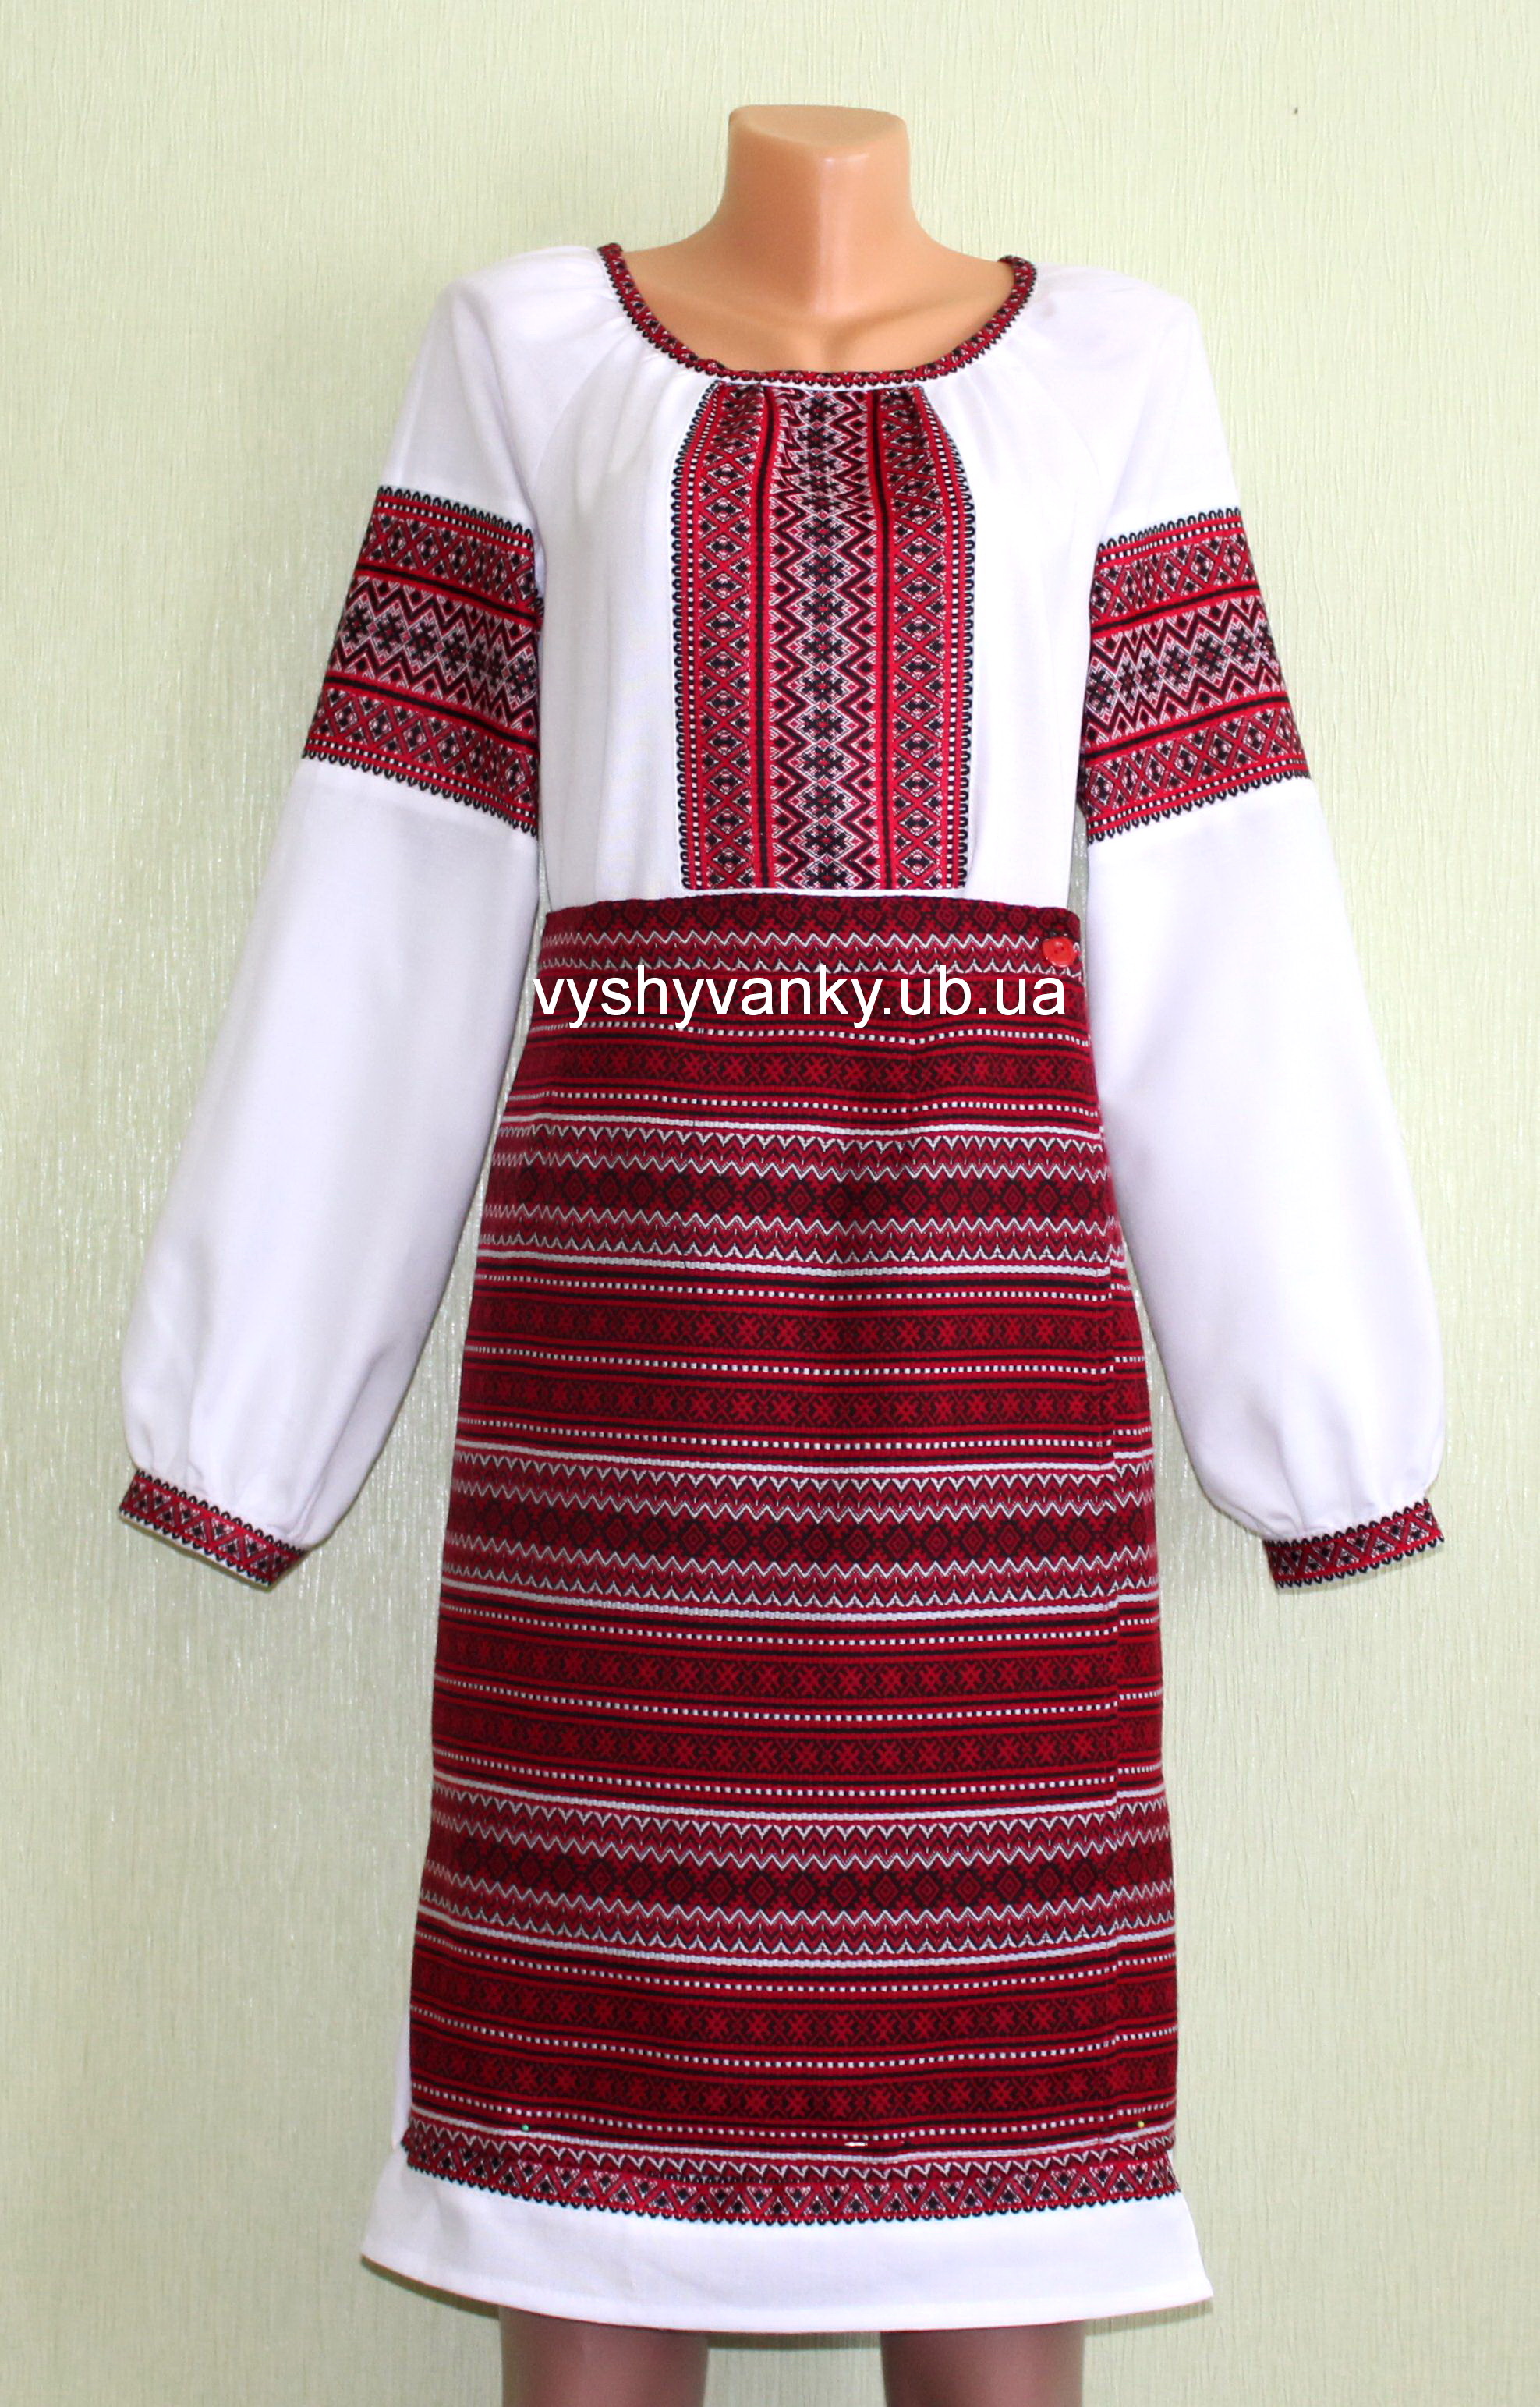 Spódnica haftowana ukrainska i haftowana koszula -
gotowy wizerunek stylowej kobiety